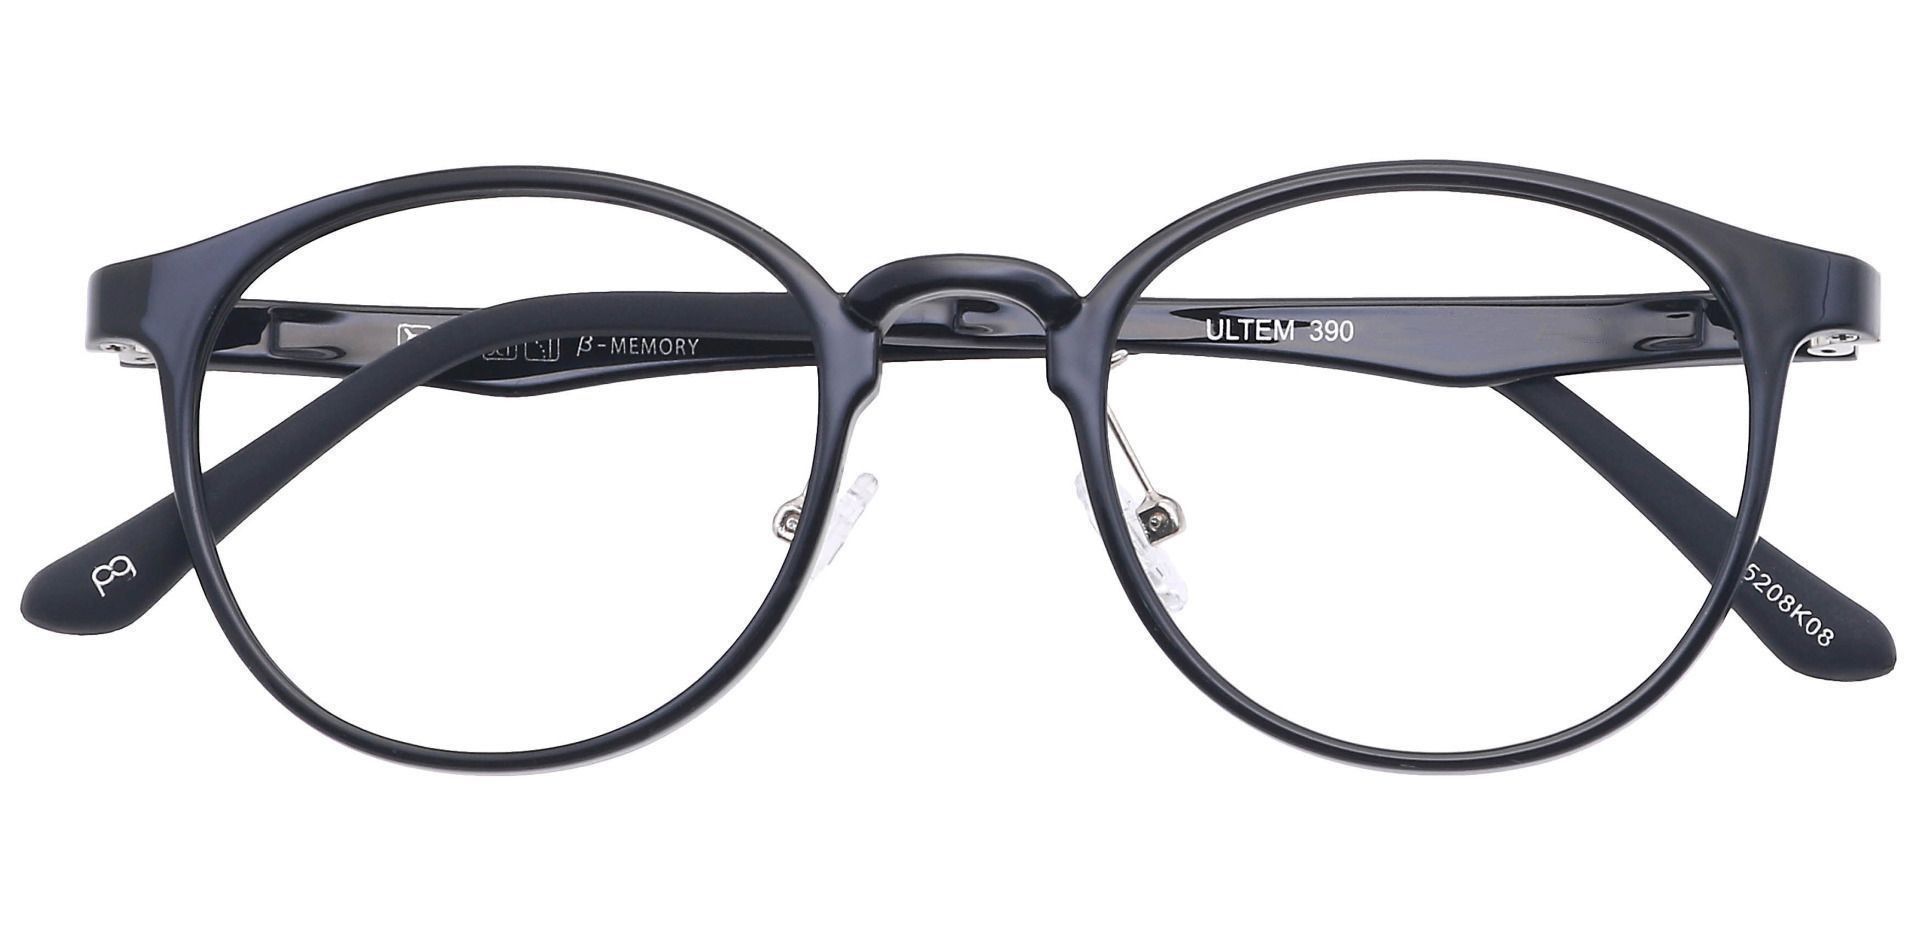 Nimbus Oval Reading Glasses - Black